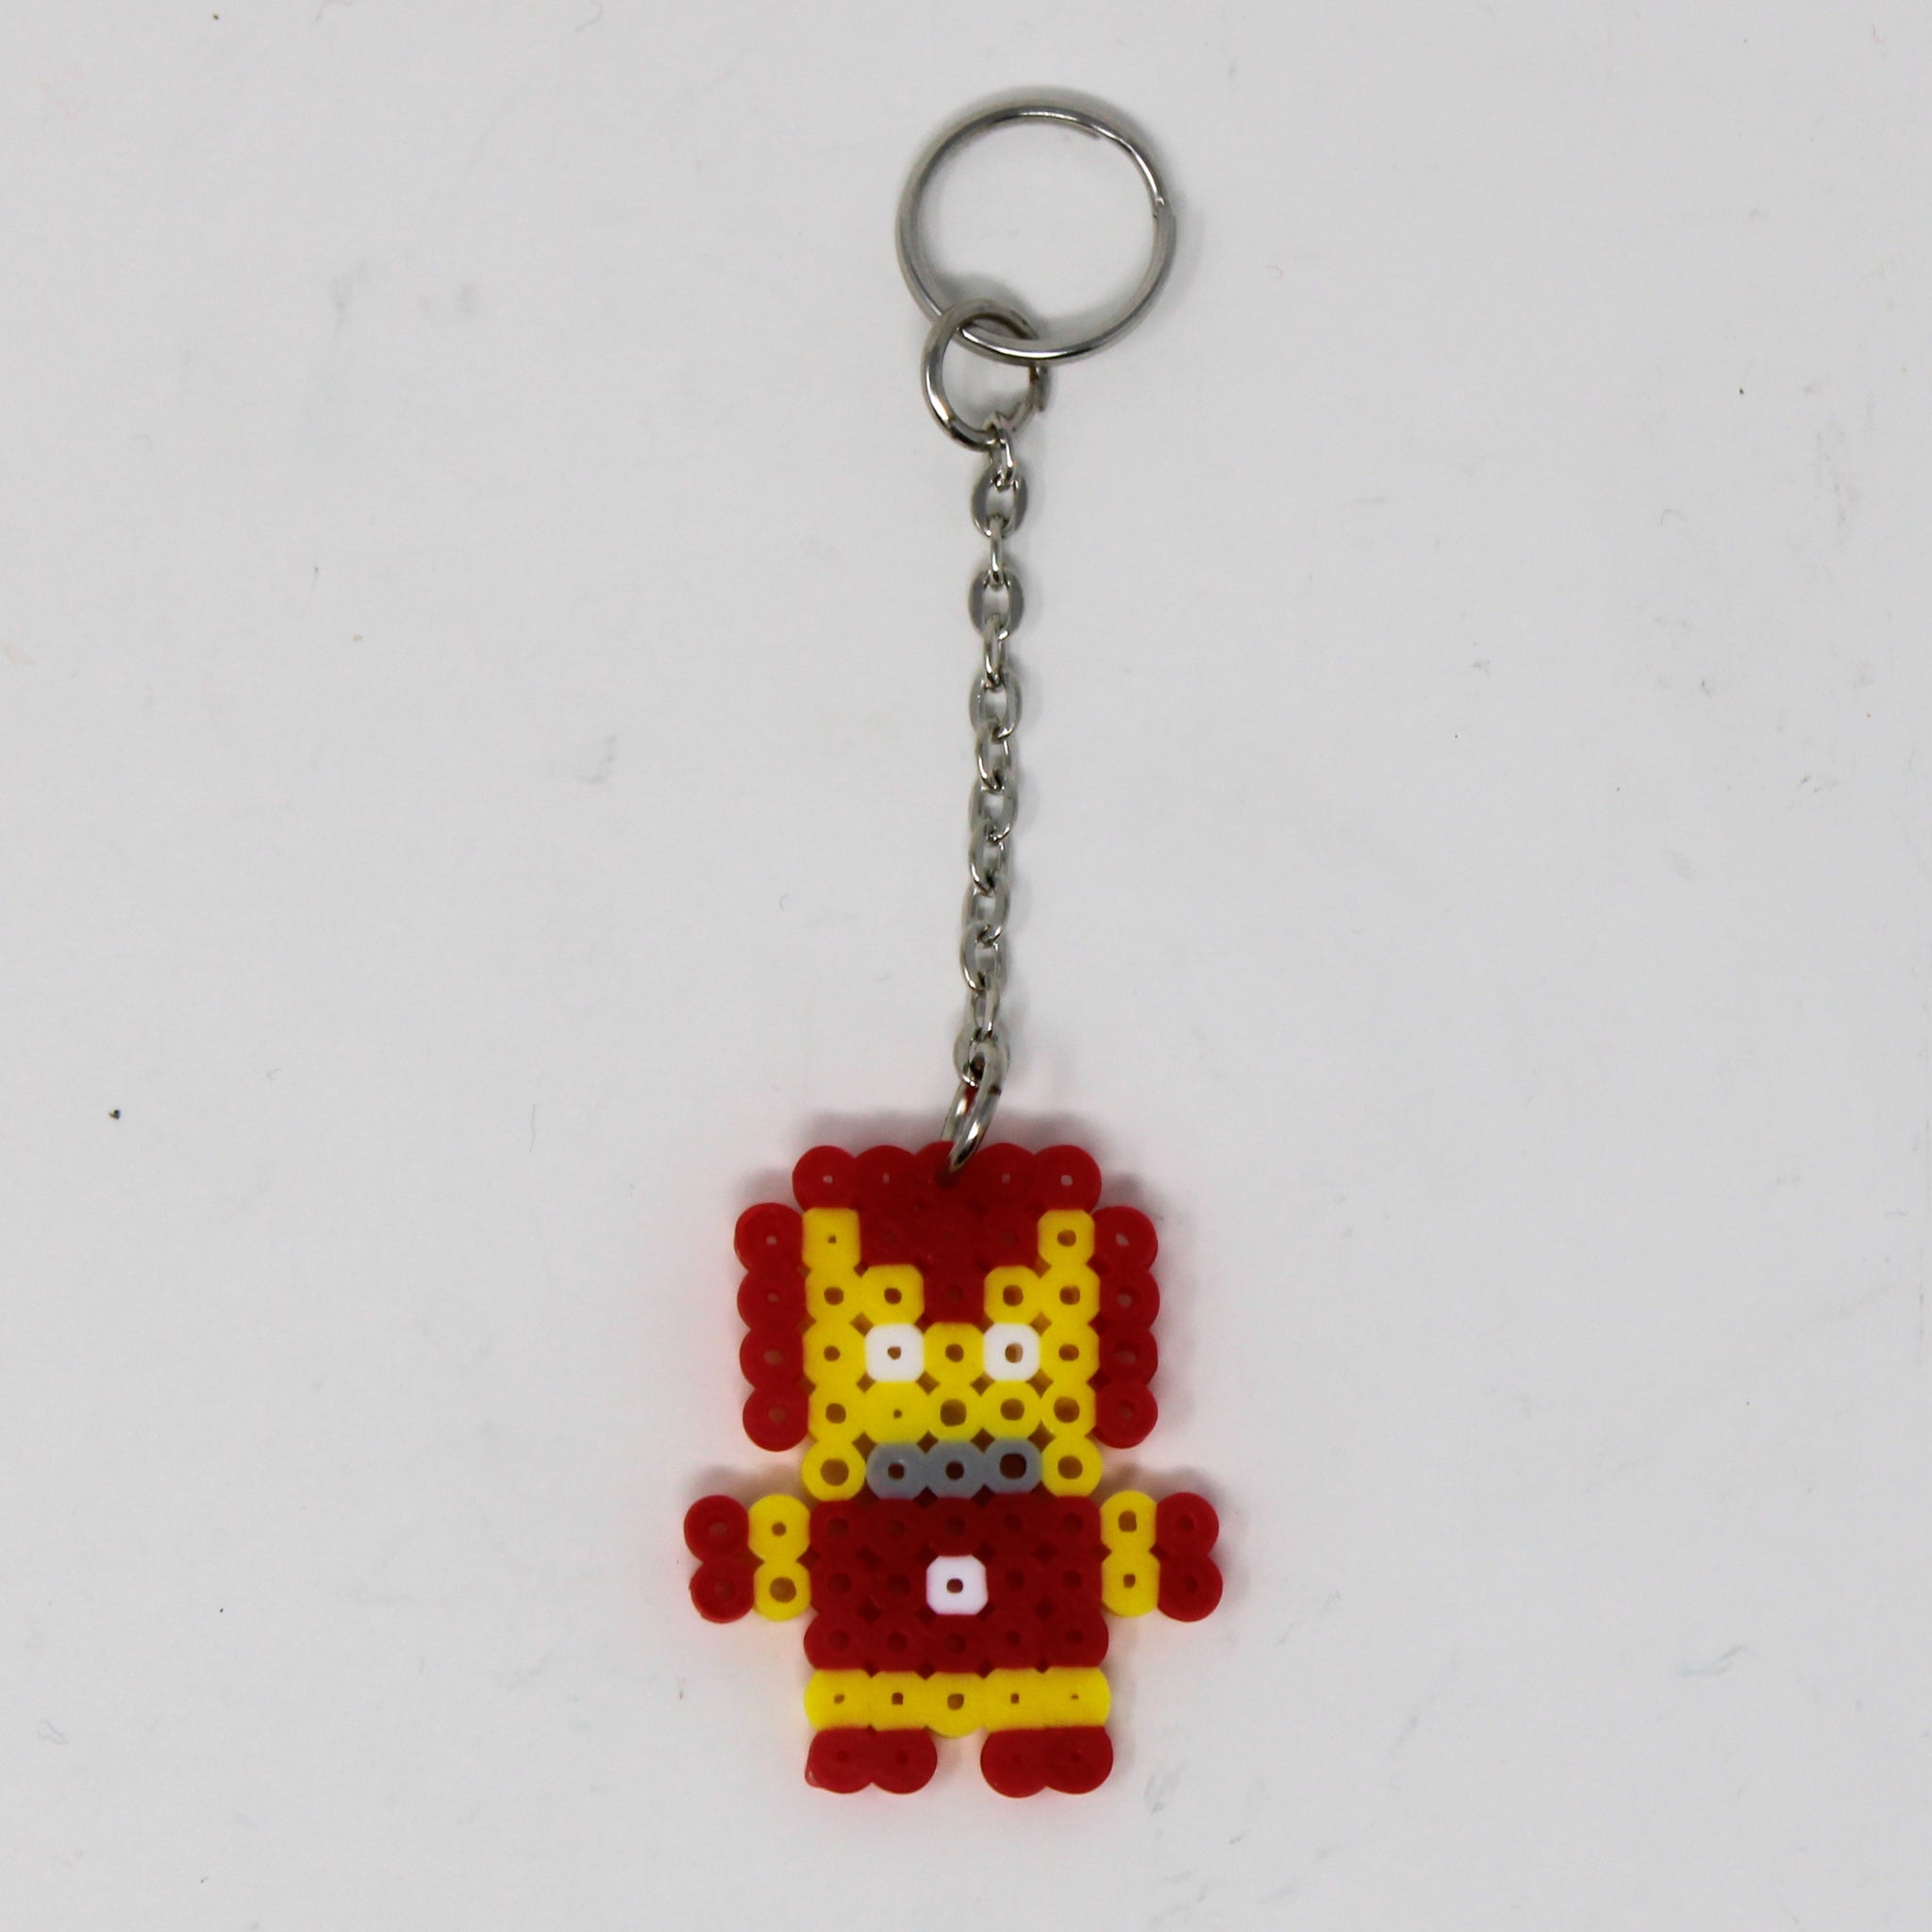 Iron Man Keychain